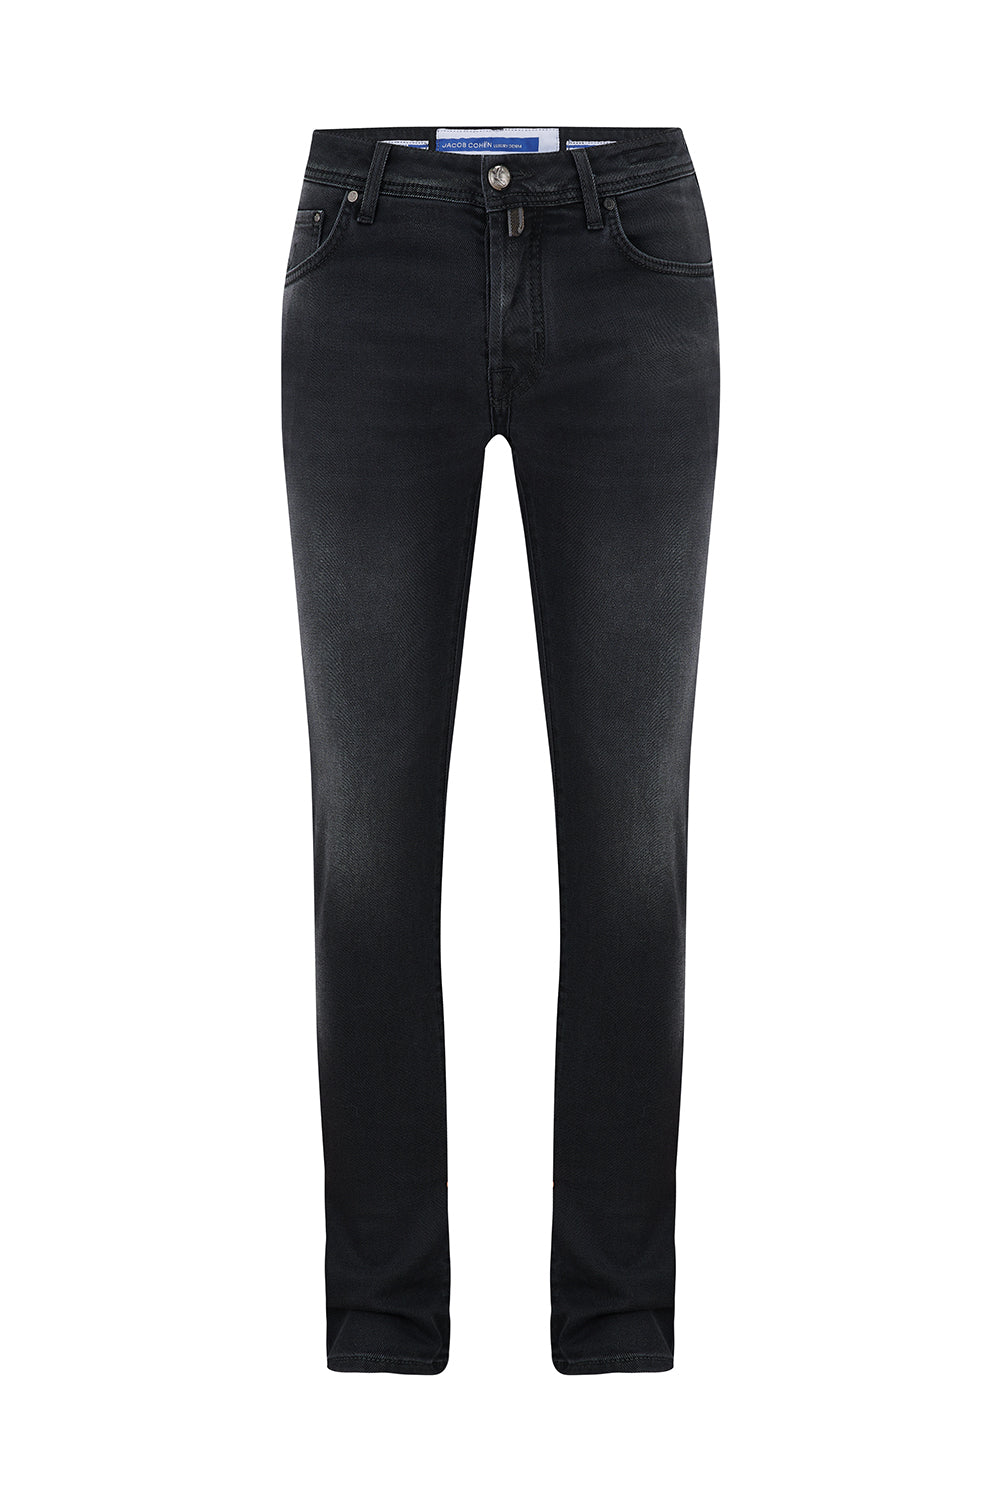 Jacob Cohën Men's Nick Slim-Fit Jeans Black - Front View